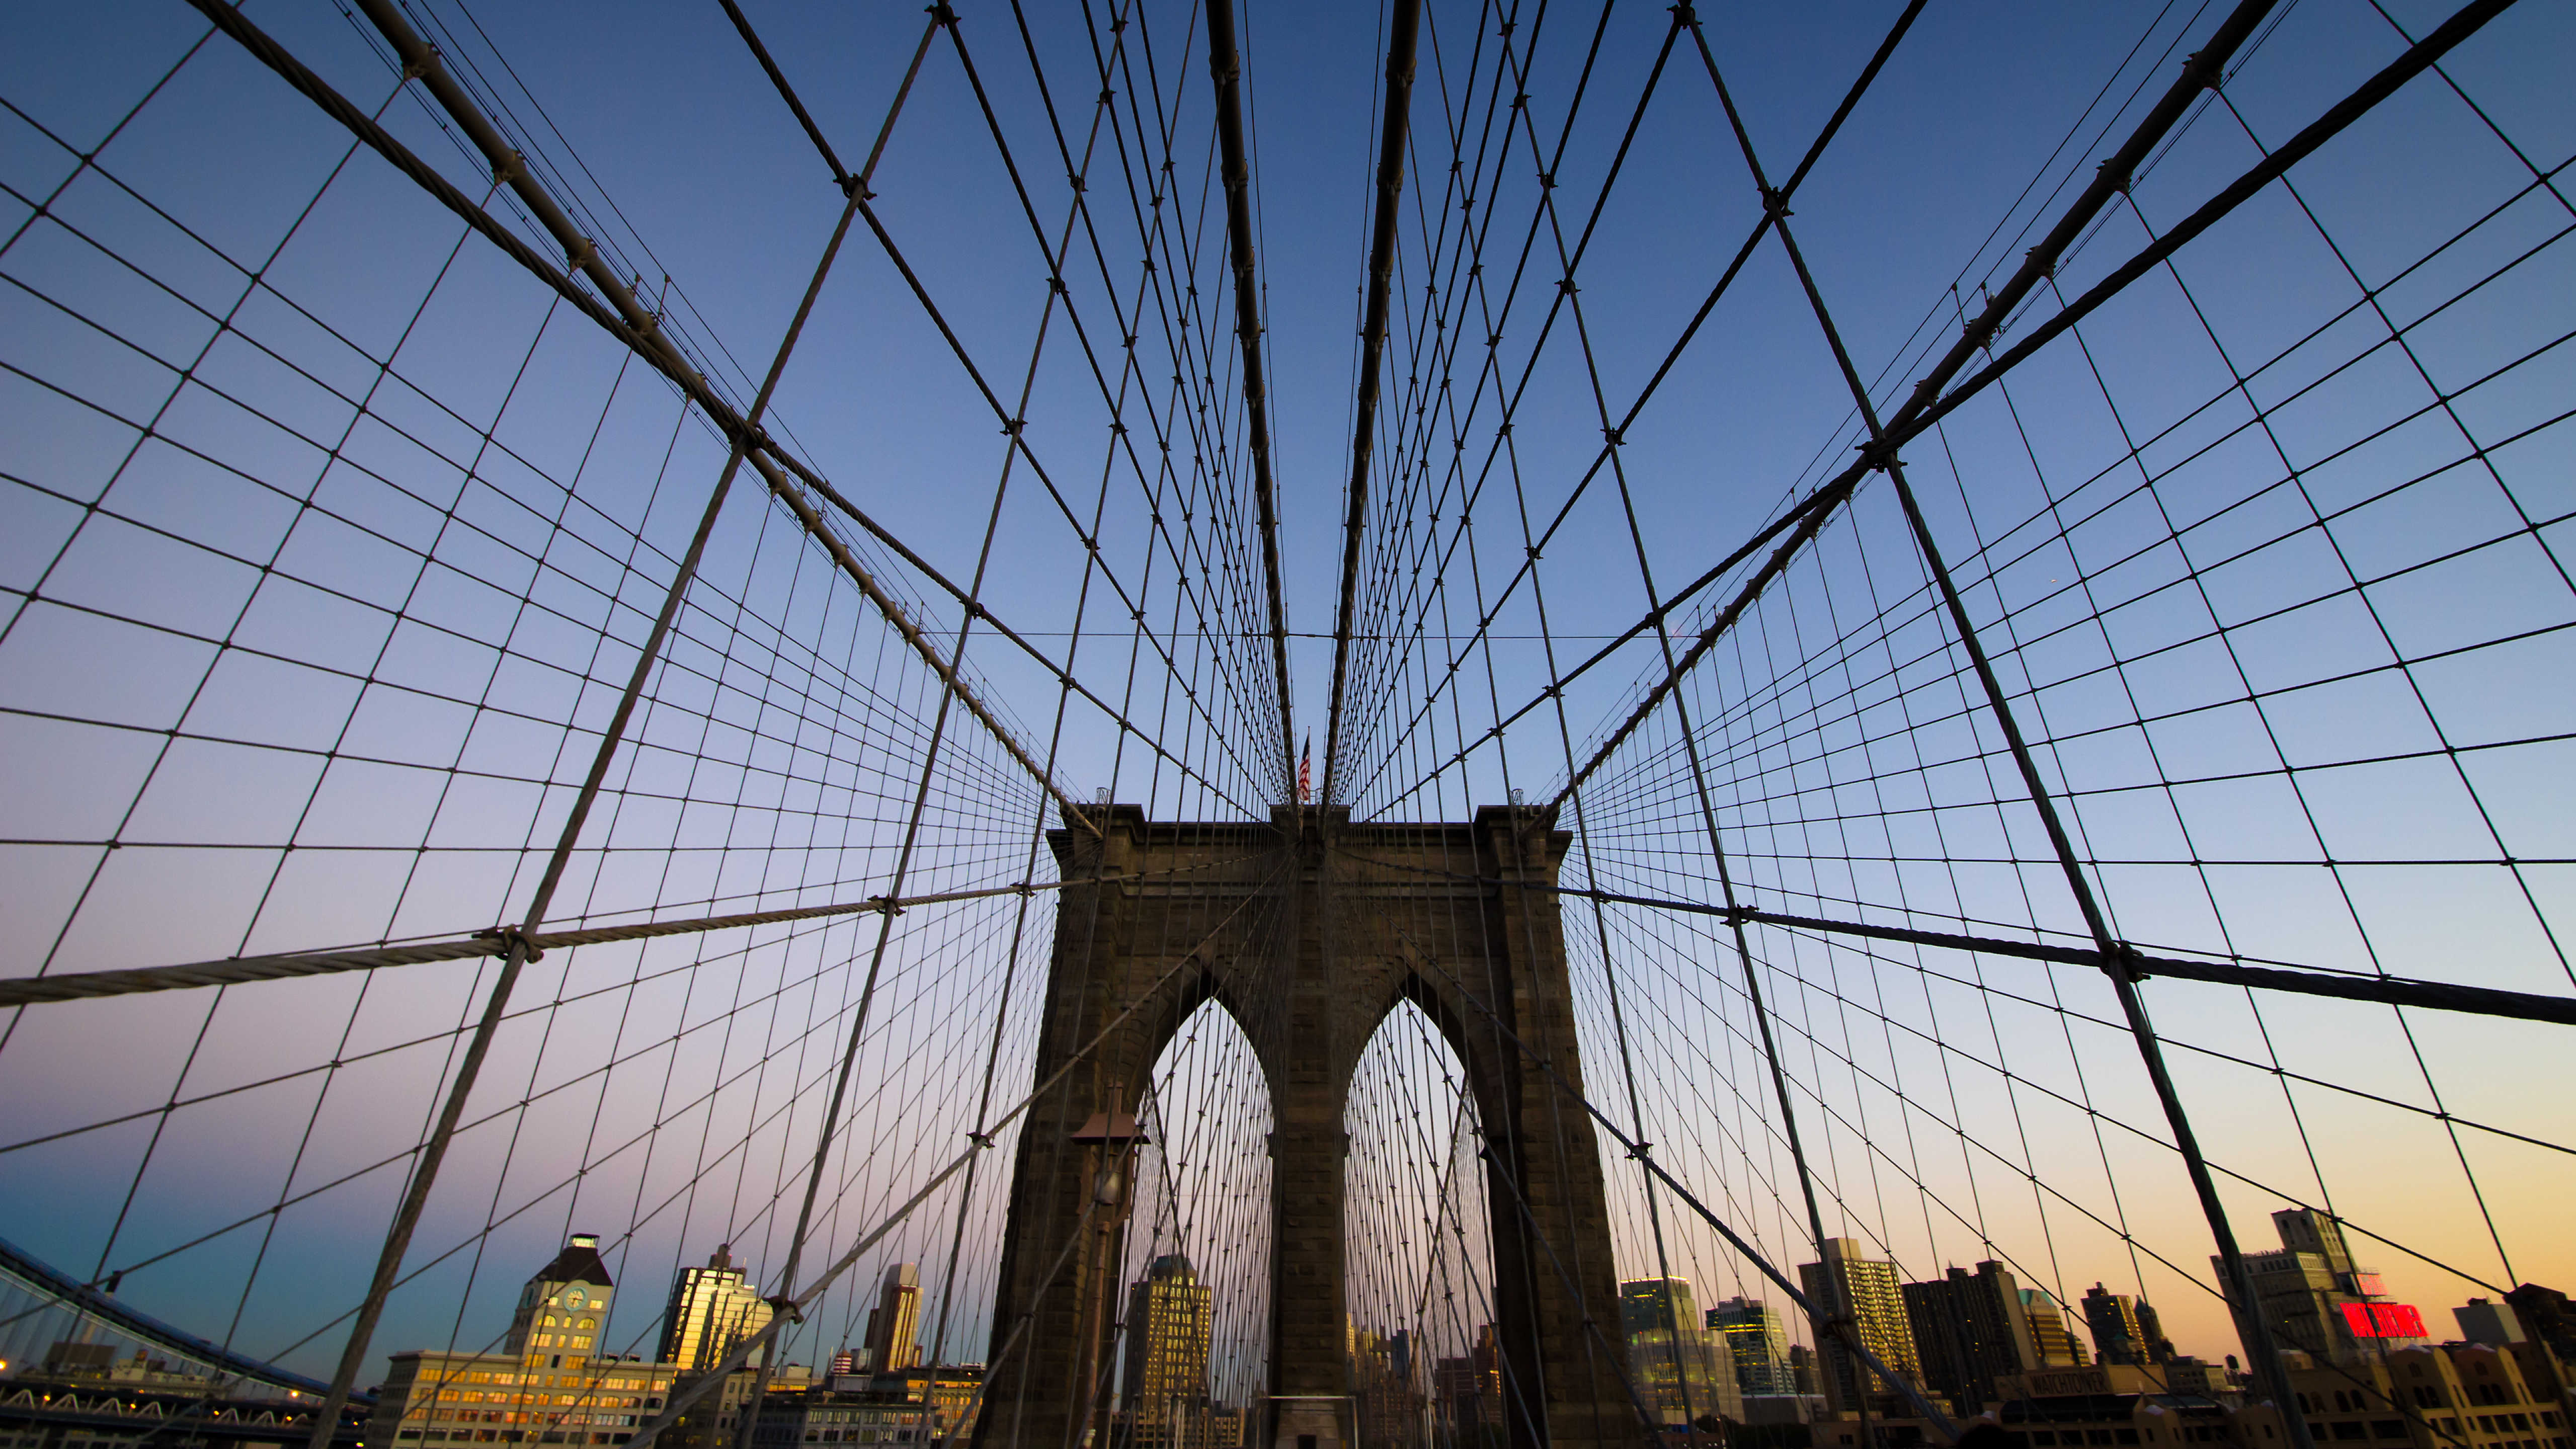 They the new bridge. Бруклинский мост Нью-Йорк. Бруклинский мост архитектура. Архитектура Нью-Йорка Бруклинский мост. Достопримечательности Нью Йорка Бруклинский мост.